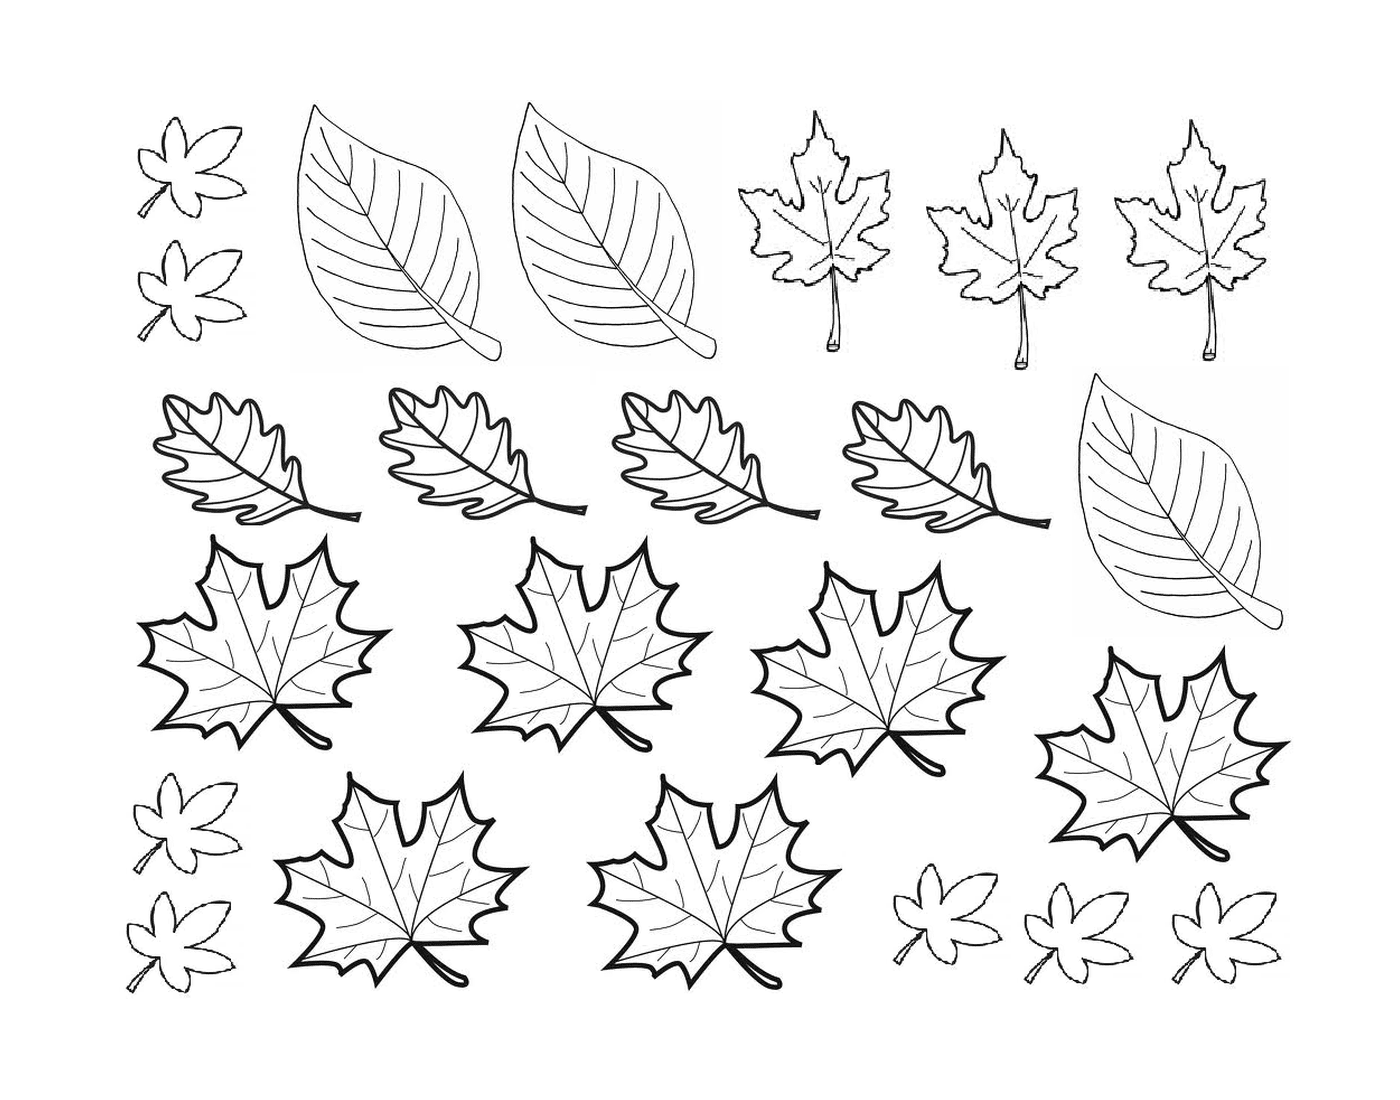   Un tas de feuilles dessinées 